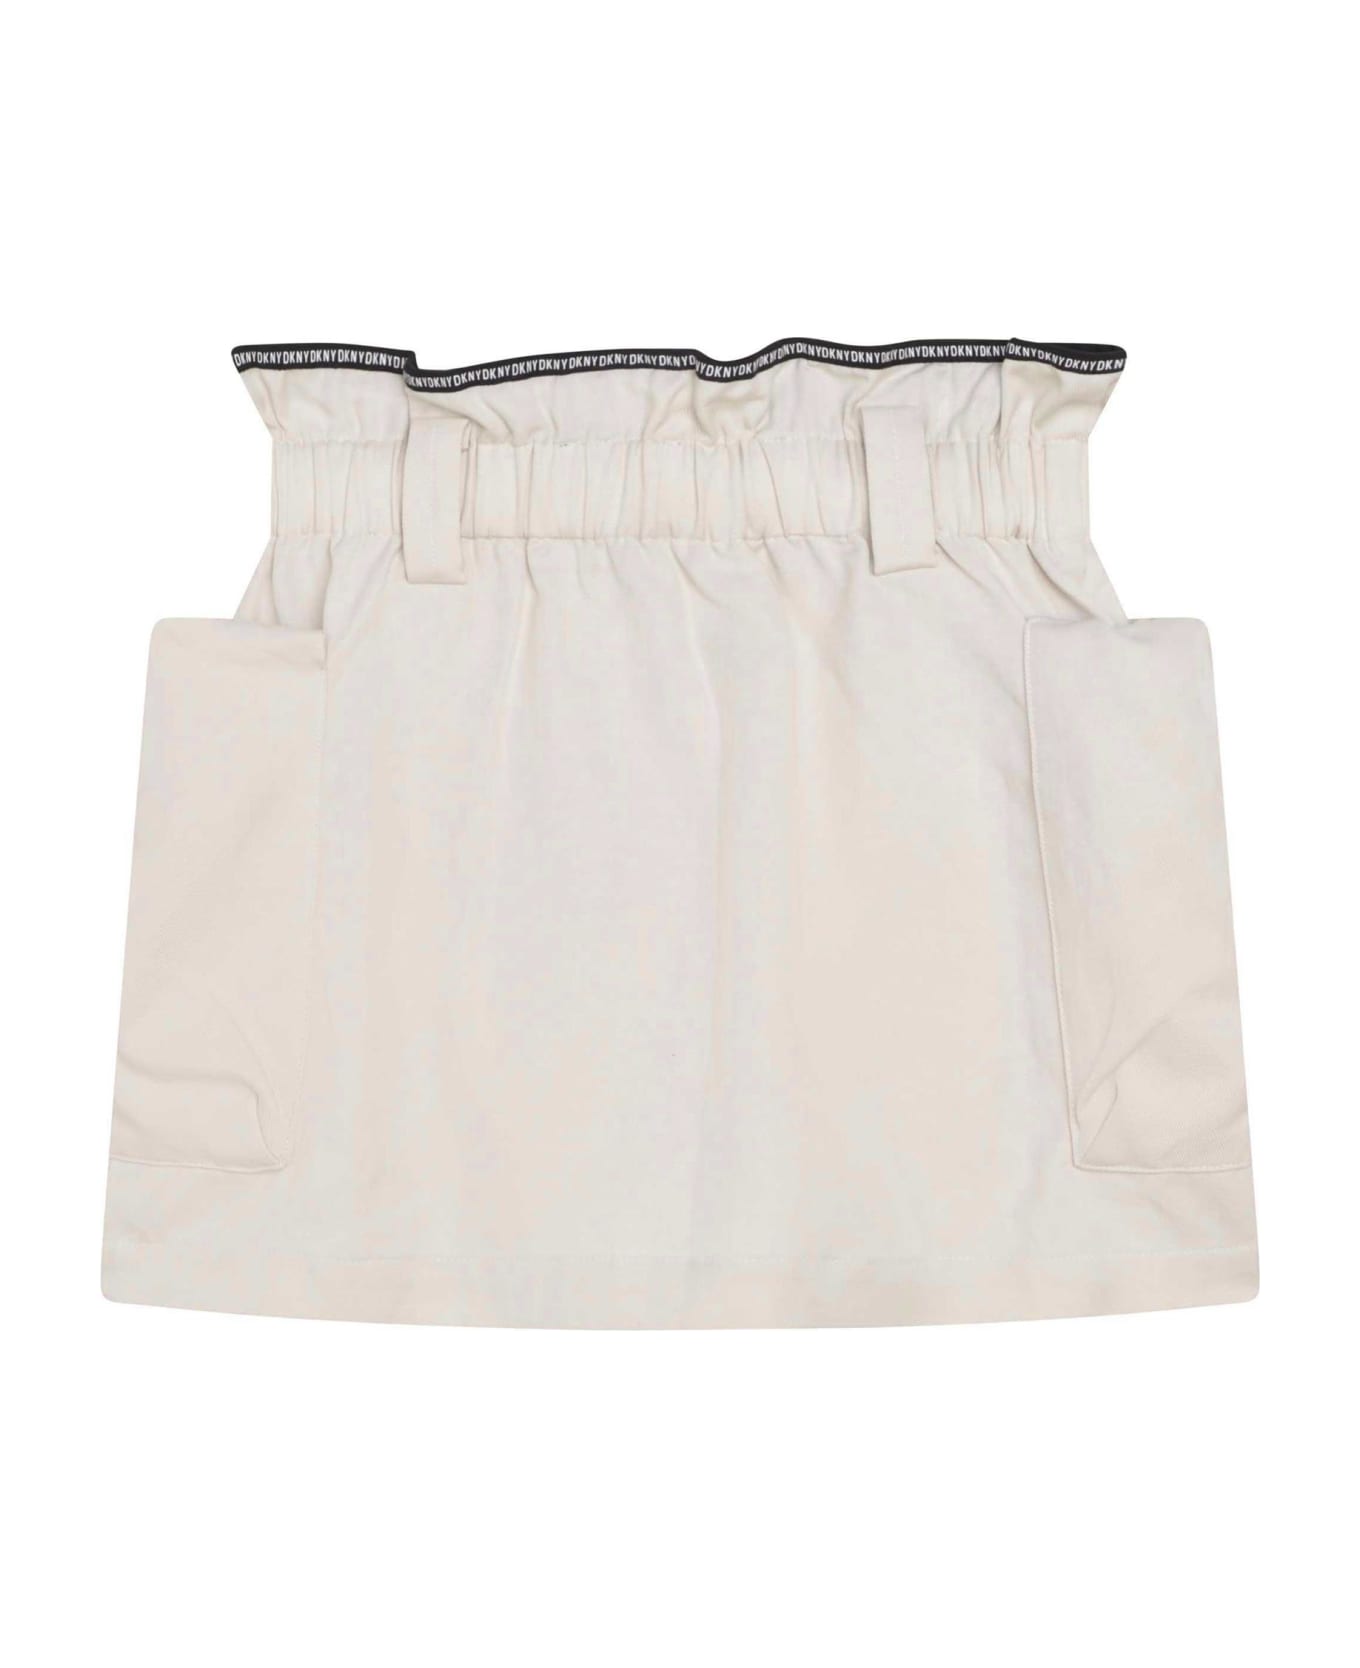 DKNY Belted Skirt - White